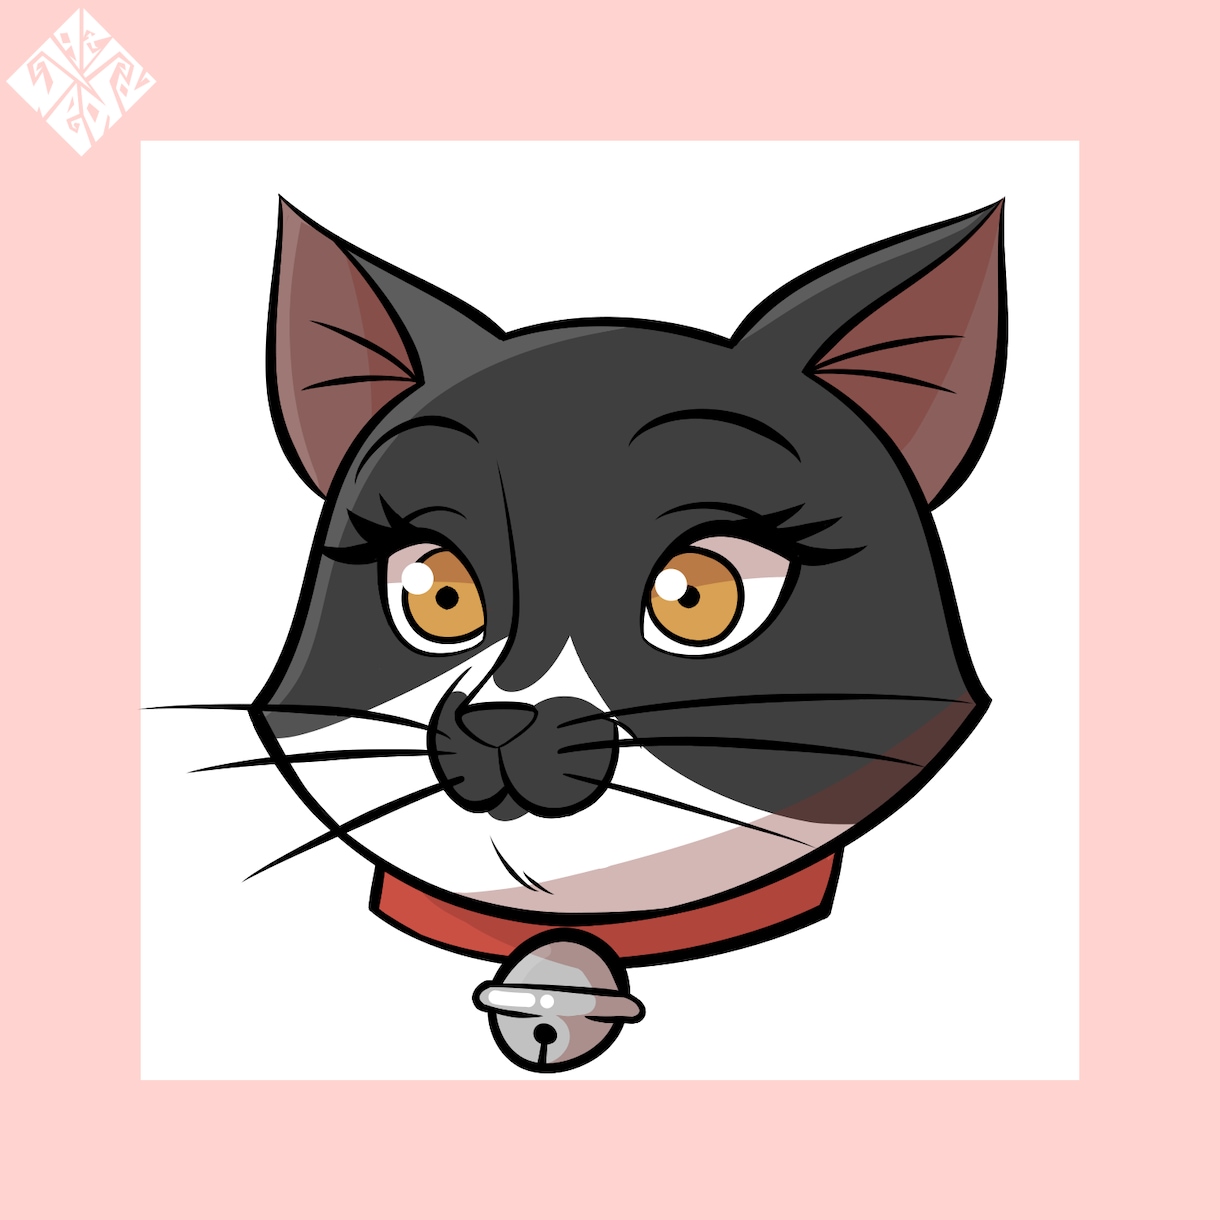 カートゥーン風の猫の似顔絵制作します 一風変わったカートゥーン風の似顔絵はいかがですか？ イメージ1